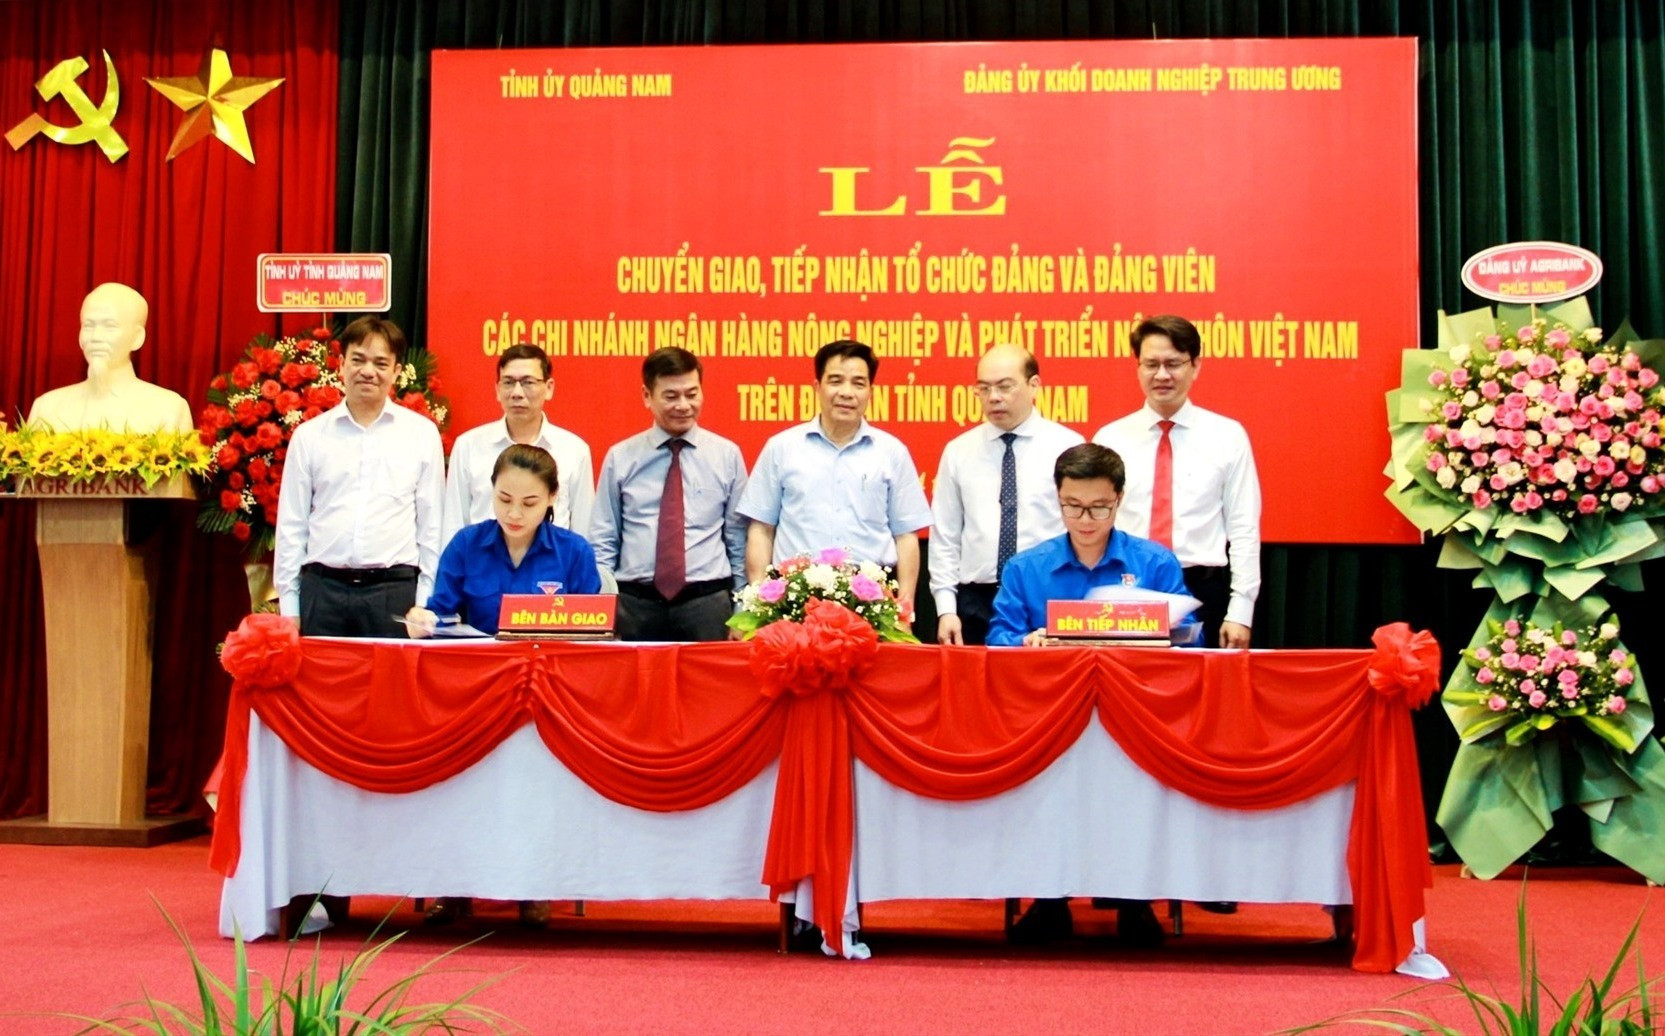 Đại diện Thành đoàn Tam Kỳ và Đoàn Thanh niên Agribank Việt Nam ký biên bản, bàn giao tổ chức đoàn và đoàn viên. Ảnh: Q.V